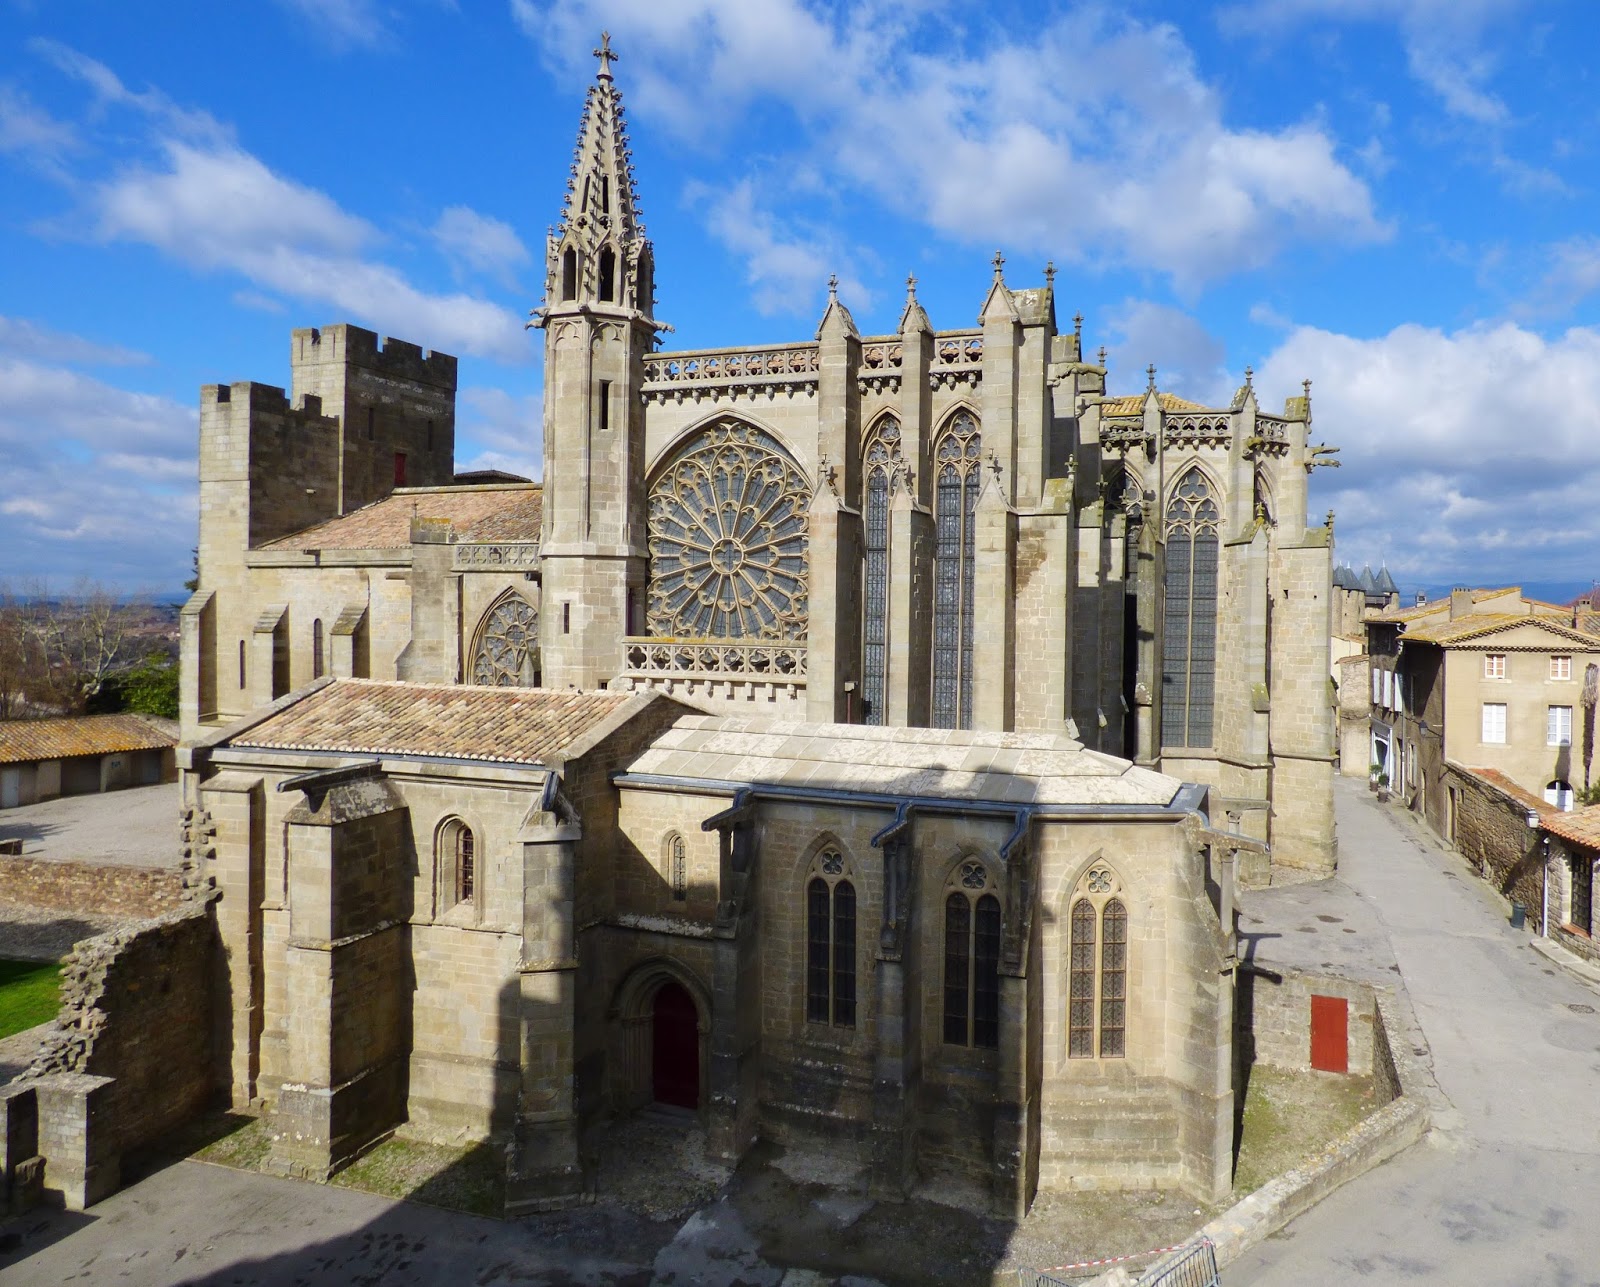 Pueblos y pueblos medievales!! Alucinantes - Blogs de Francia - CARCASSONNE, FRANCIA (18)